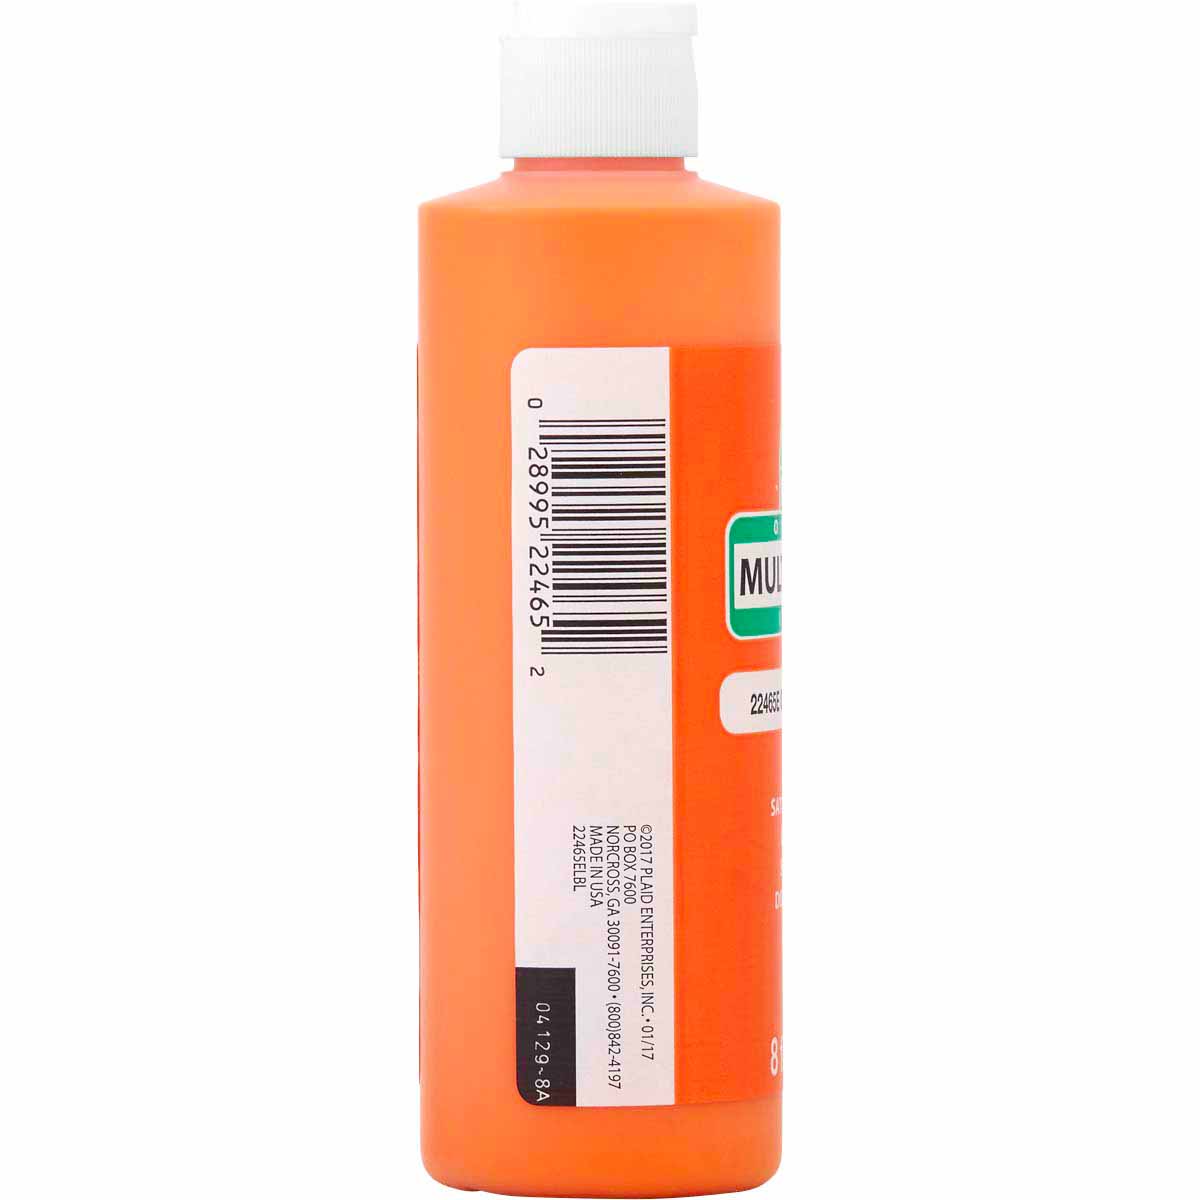 Apple Barrel ® Multi-Surface Satin Acrylic Paints - Outrageous Orange, 8 oz. - 22465E